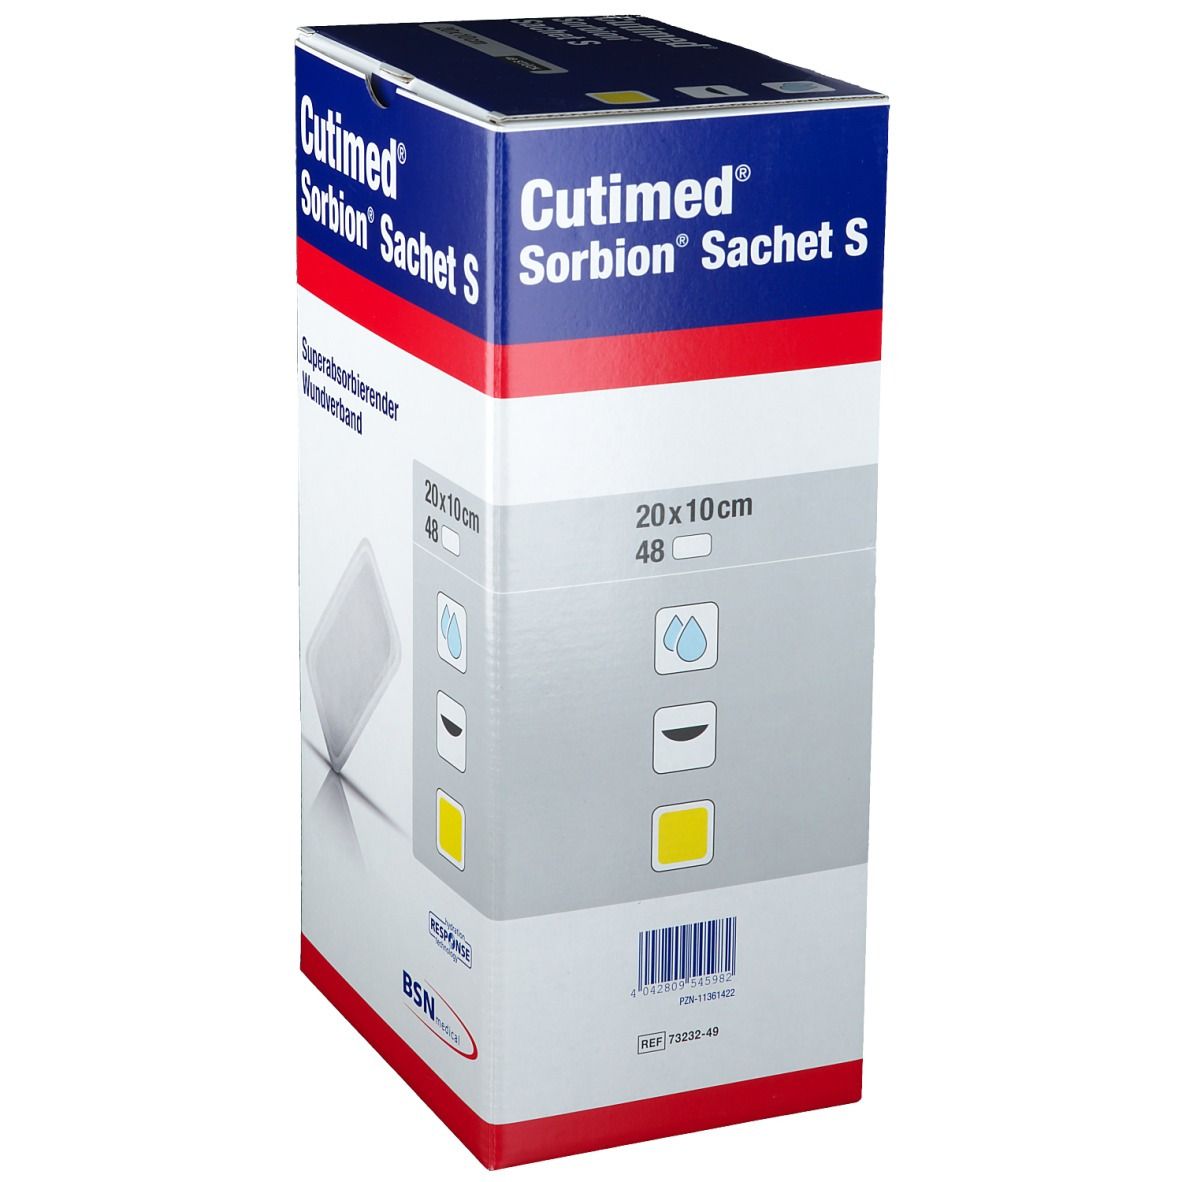 Cutimed® Sorbion Sachet S 20 cm x 10 cm